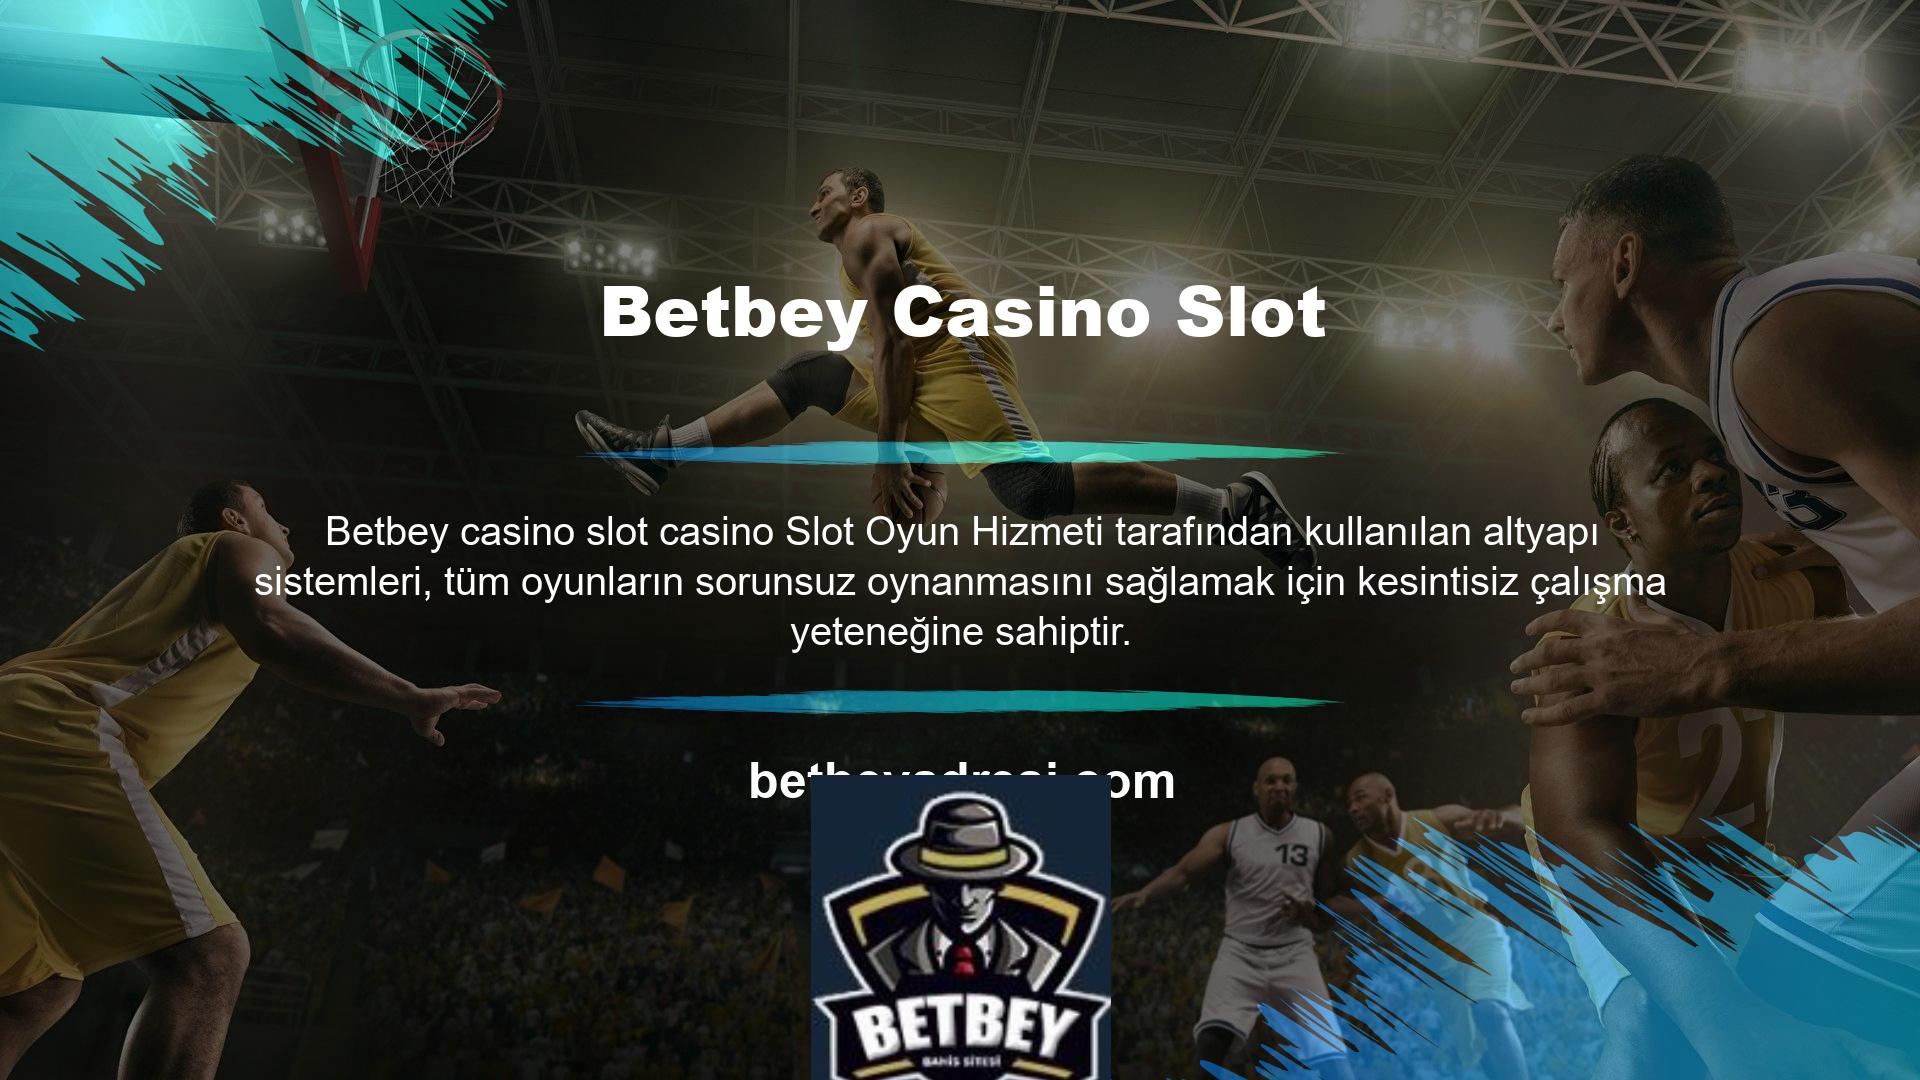 Betbey kurulduğunda casino, canlı casino ve spor bahisleri bölümlerinde eksiksiz bir oyun yelpazesi sunmayı amaçlıyordu